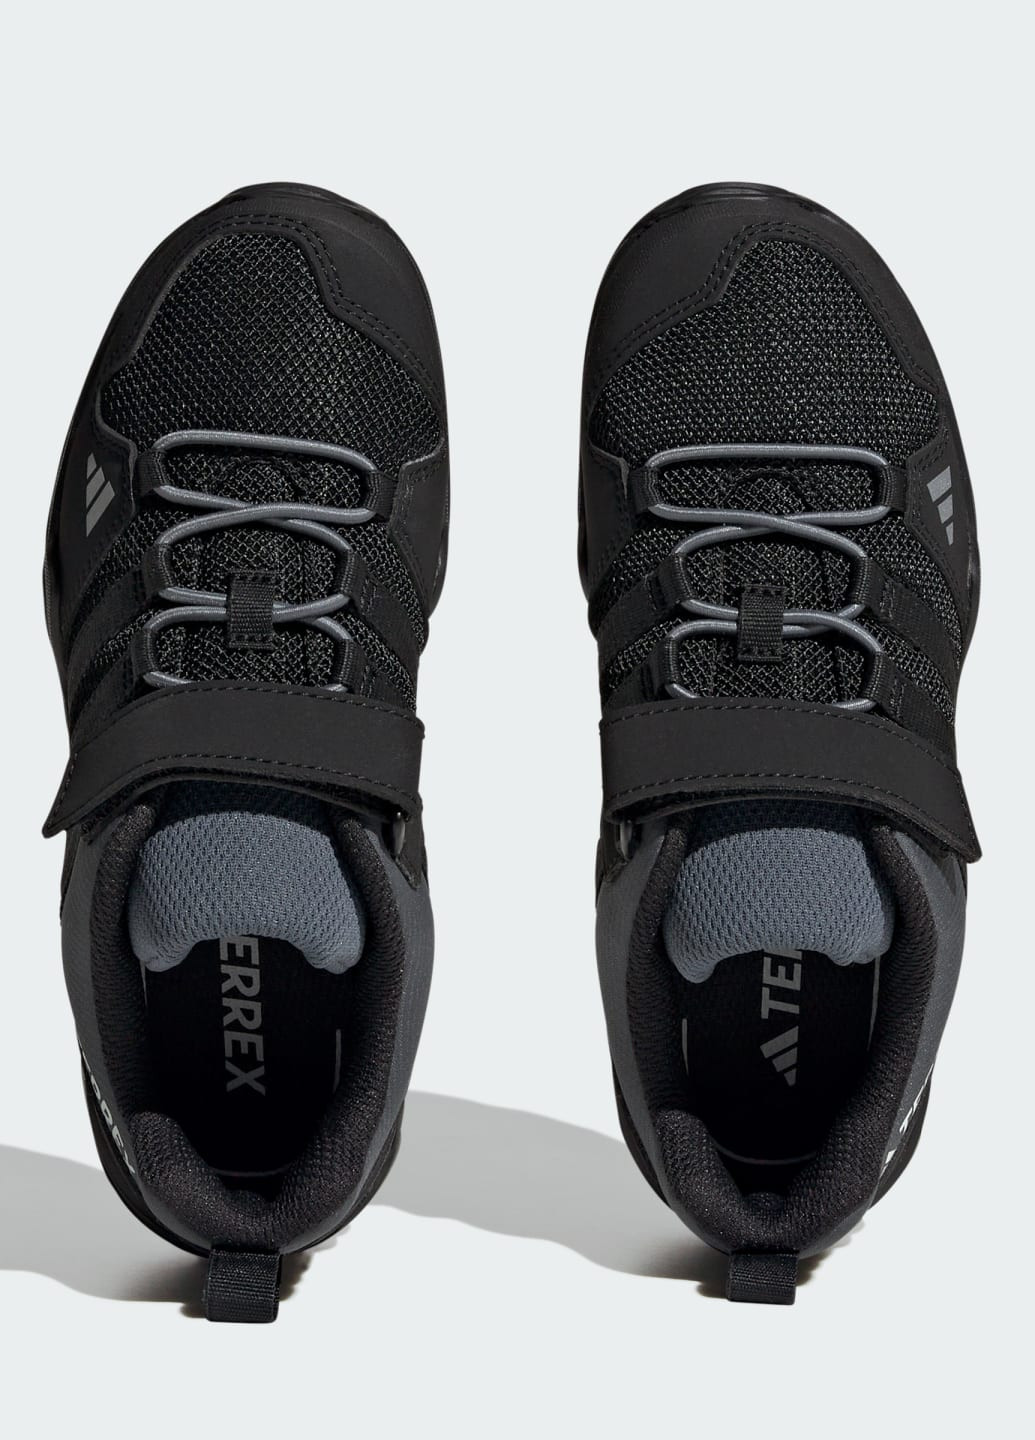 Черные всесезонные кроссовки для хайкинга terrex ax2r hook-and-loop adidas